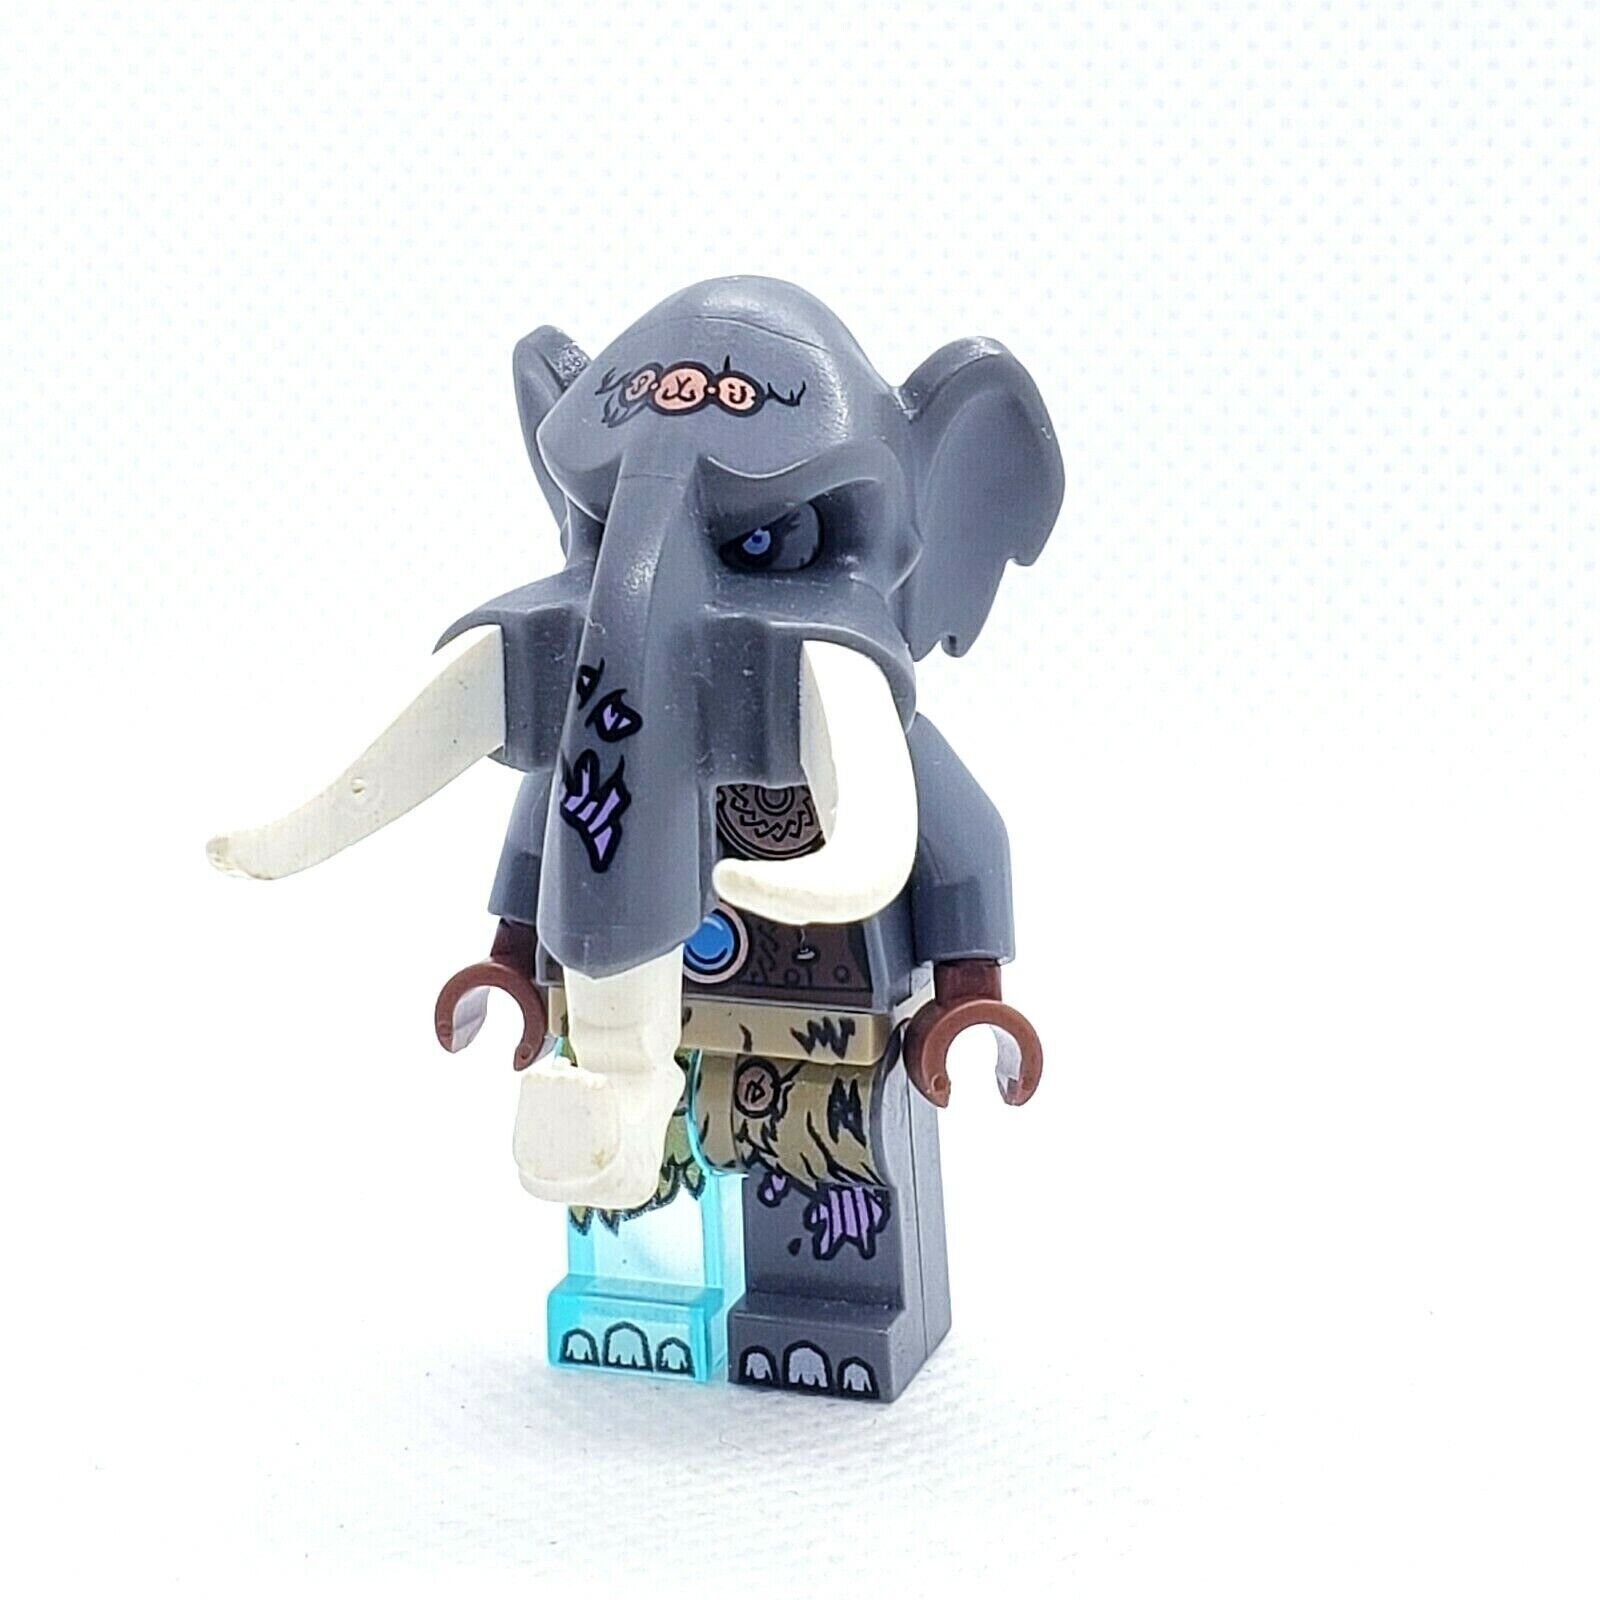 Lego Minifigure Legends of Chima Maula